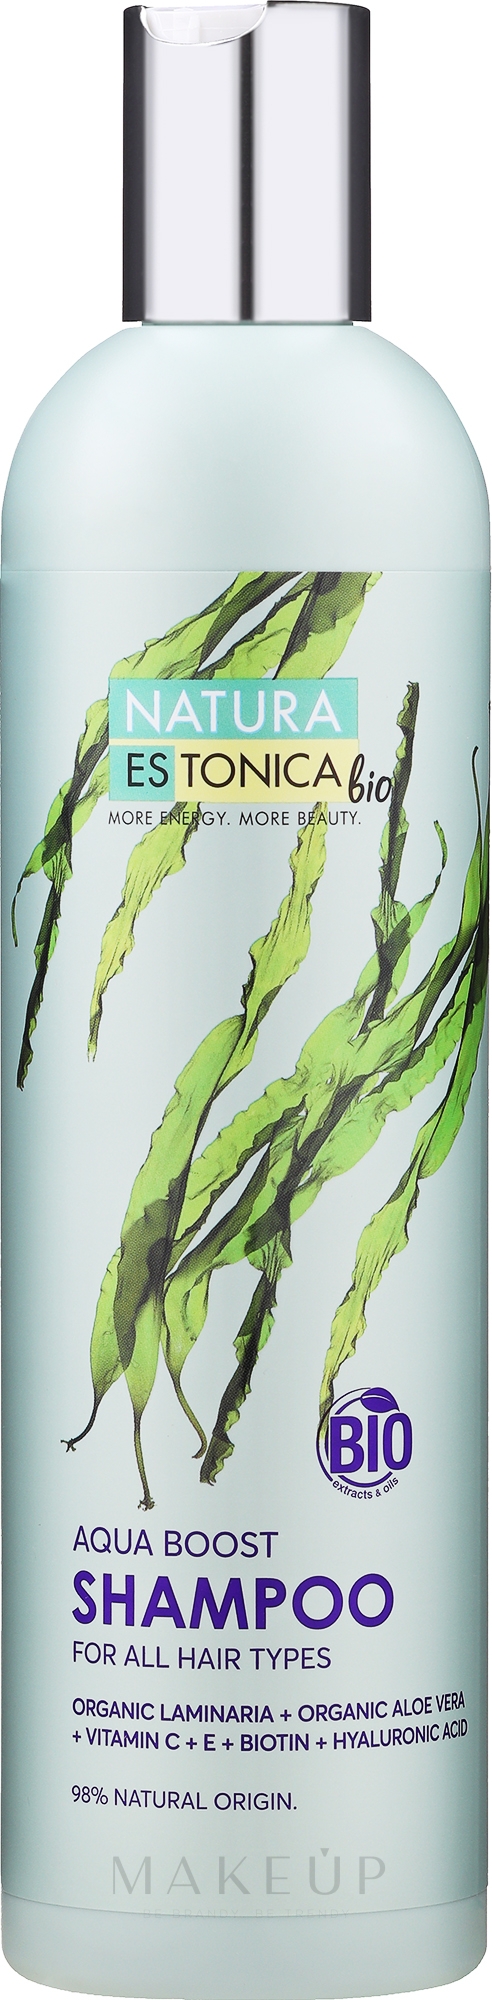 Feuchtigkeitsspendendes Shampoo für feines, coloriertes Haar - Natura Estonica Aqua Boos Shampoo — Bild 400 ml